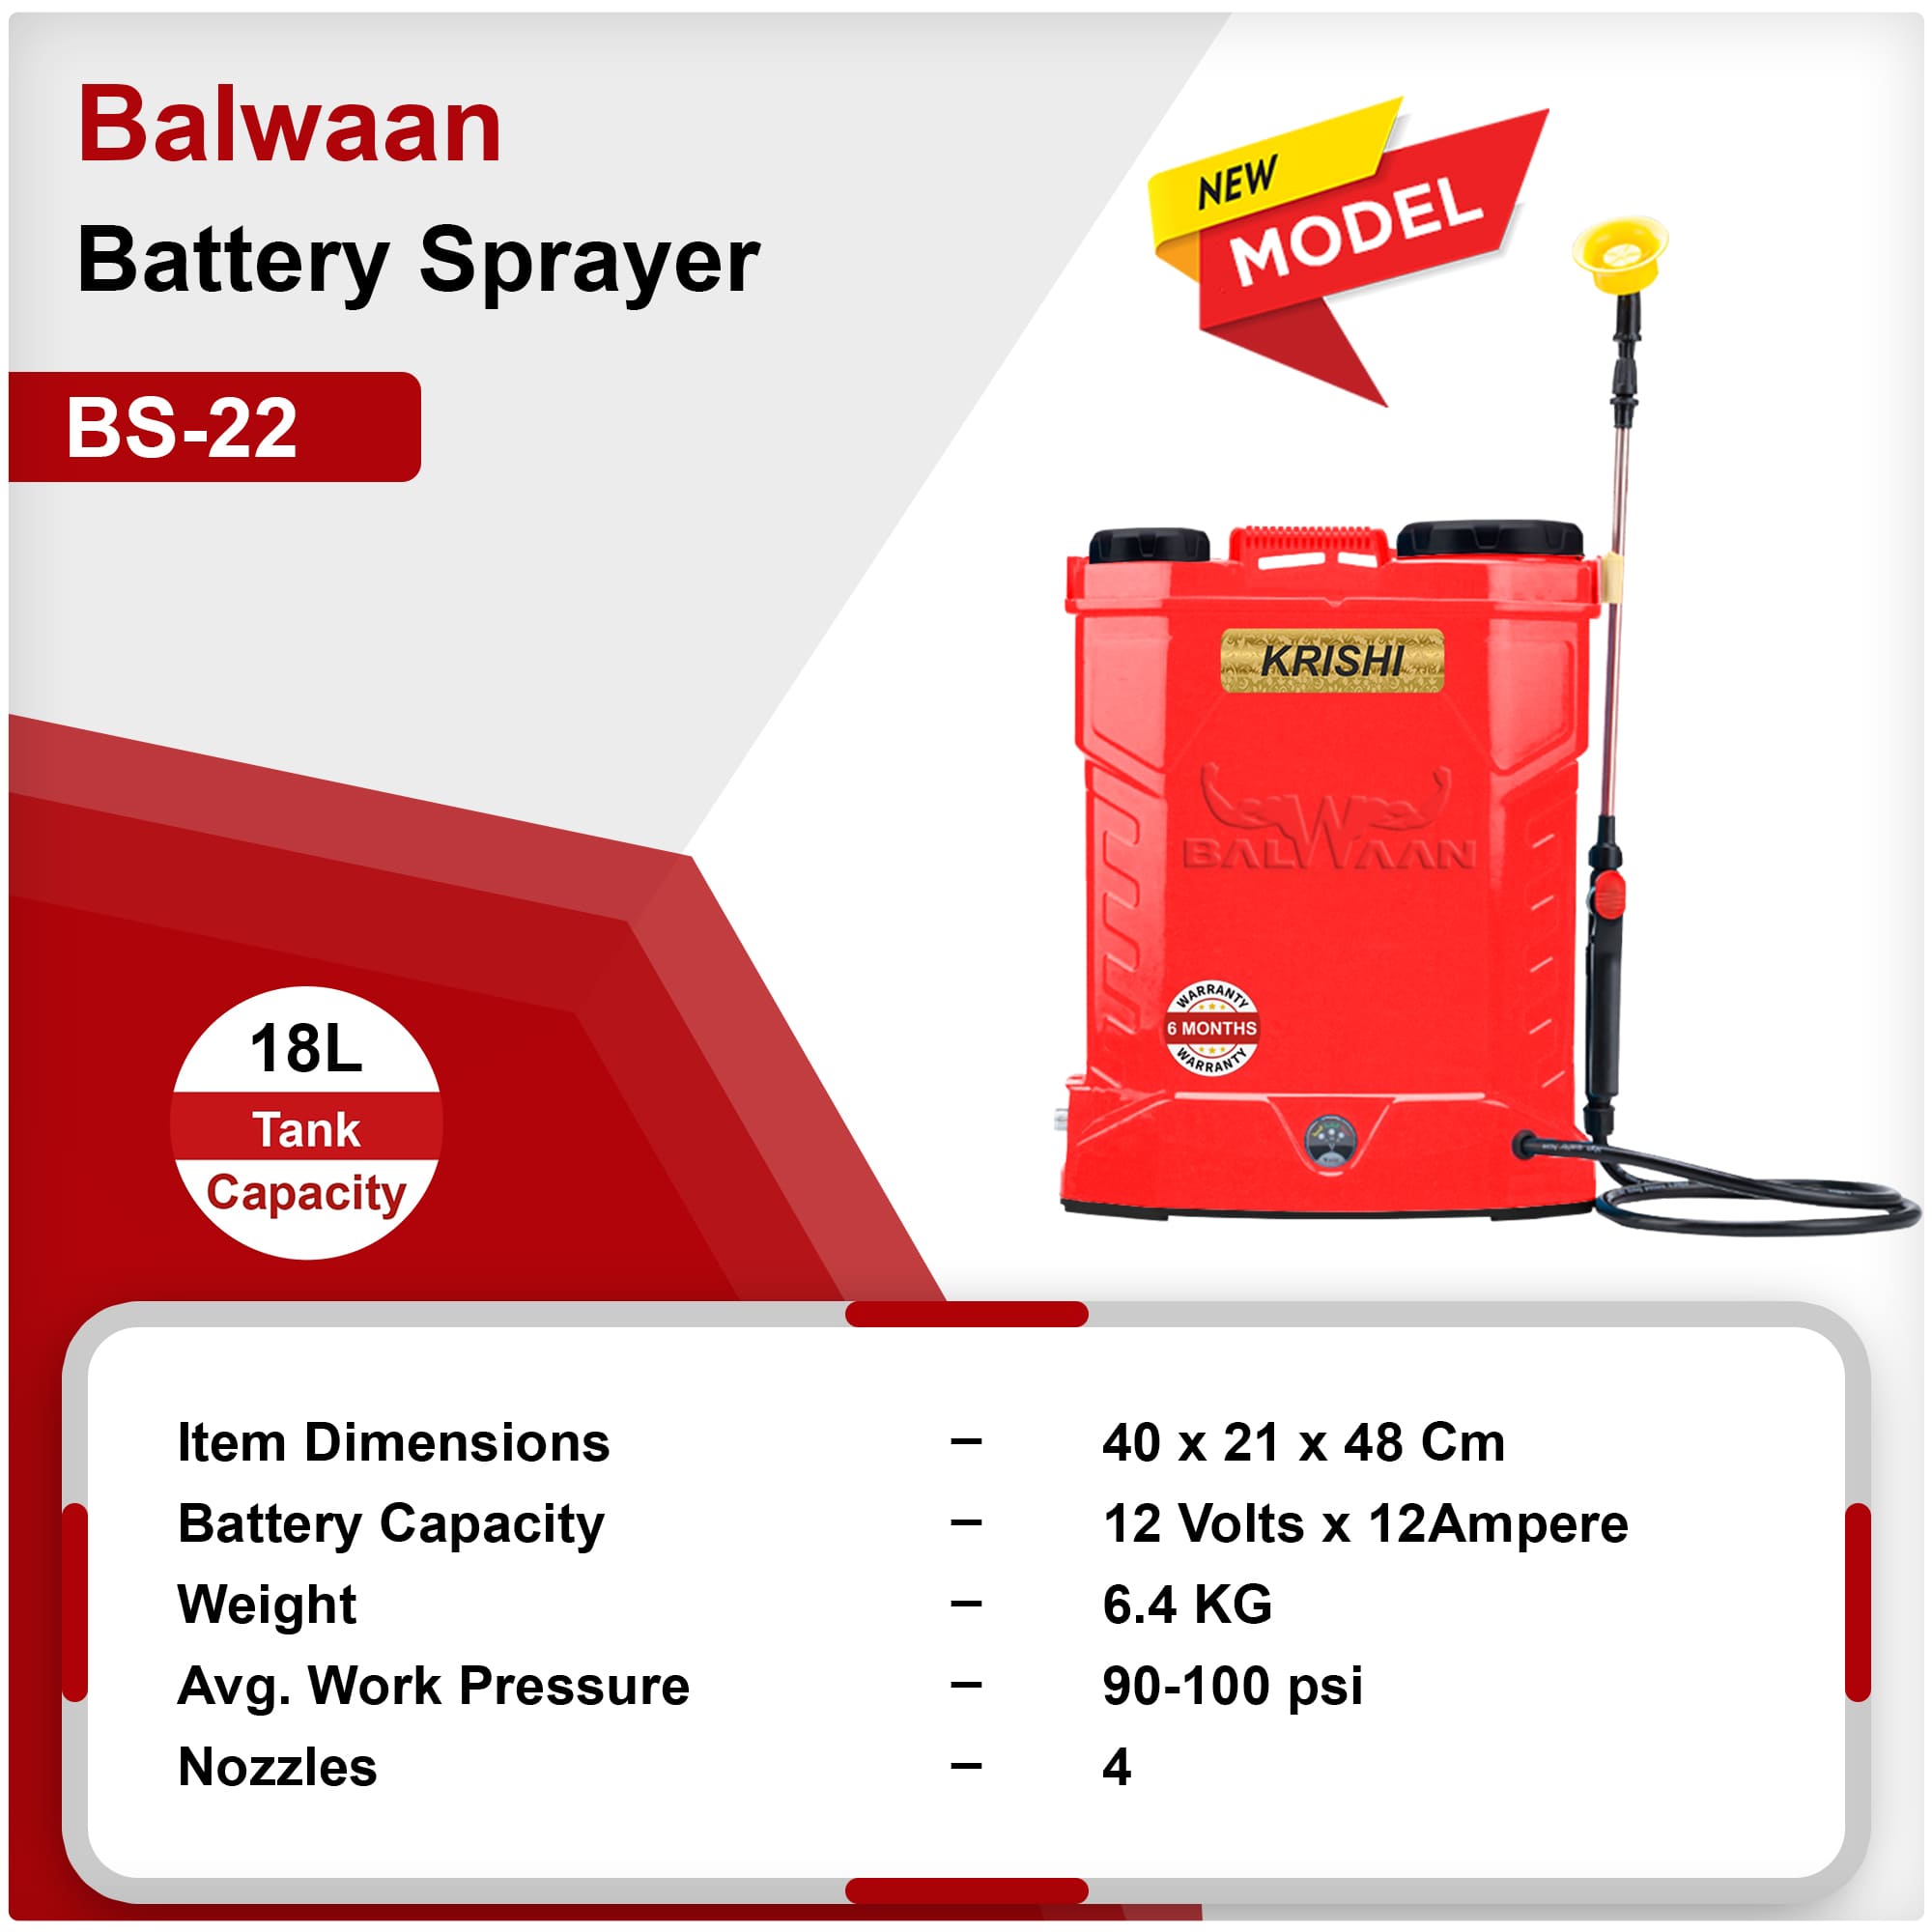 balwaan-bs-22-battery-sprayer-bs2-1208